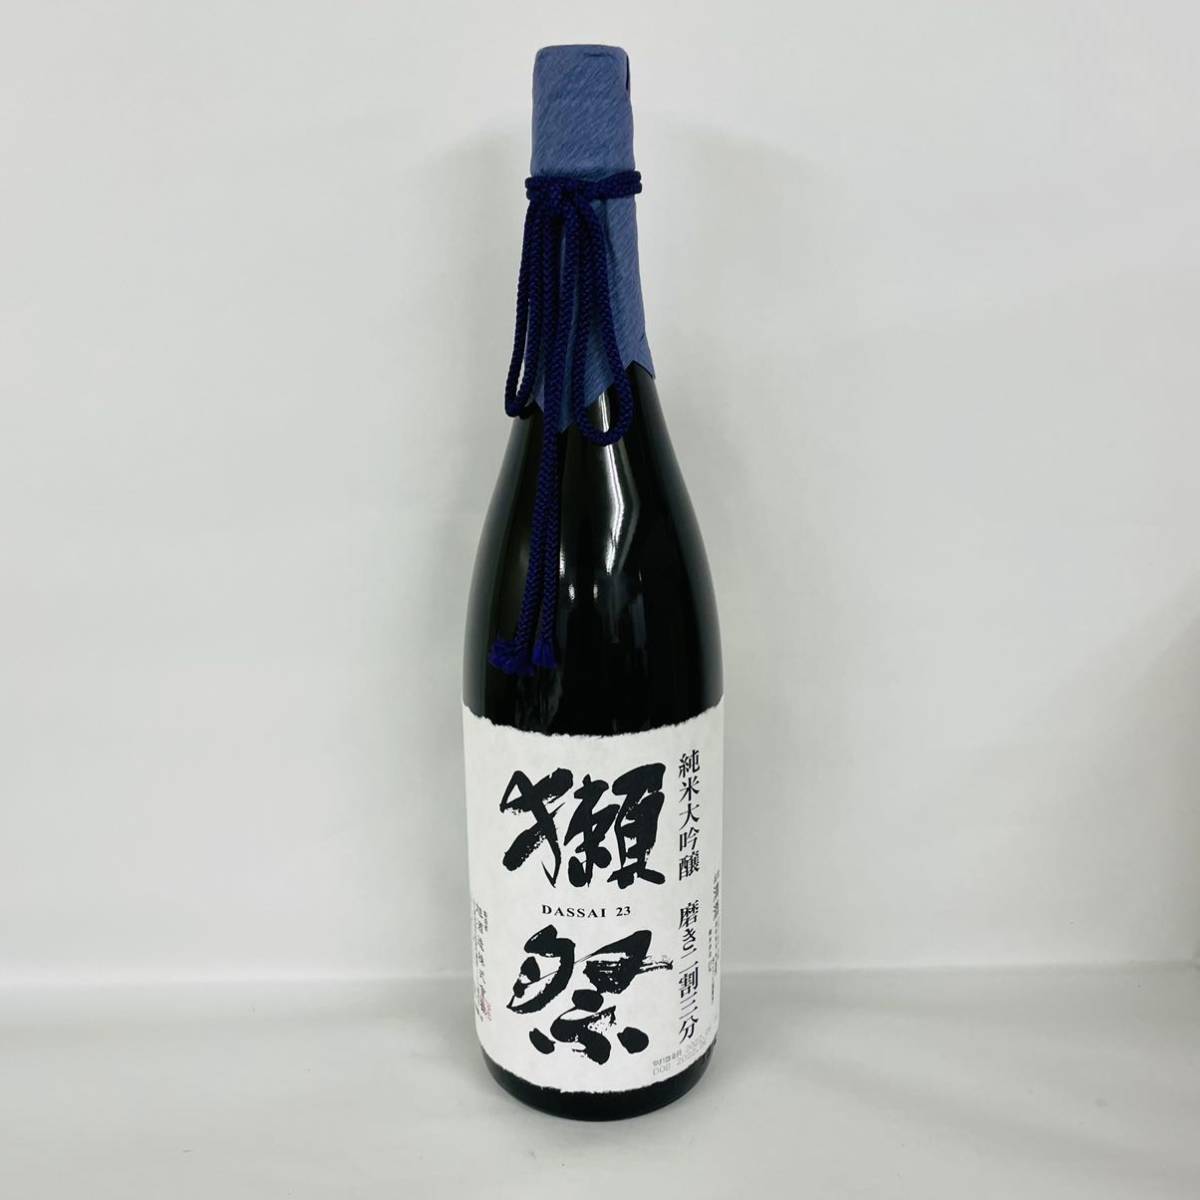 獺祭 純米大吟醸 磨き二割三分 1800ml 16% 22.6 山口県 旭酒造 日本酒